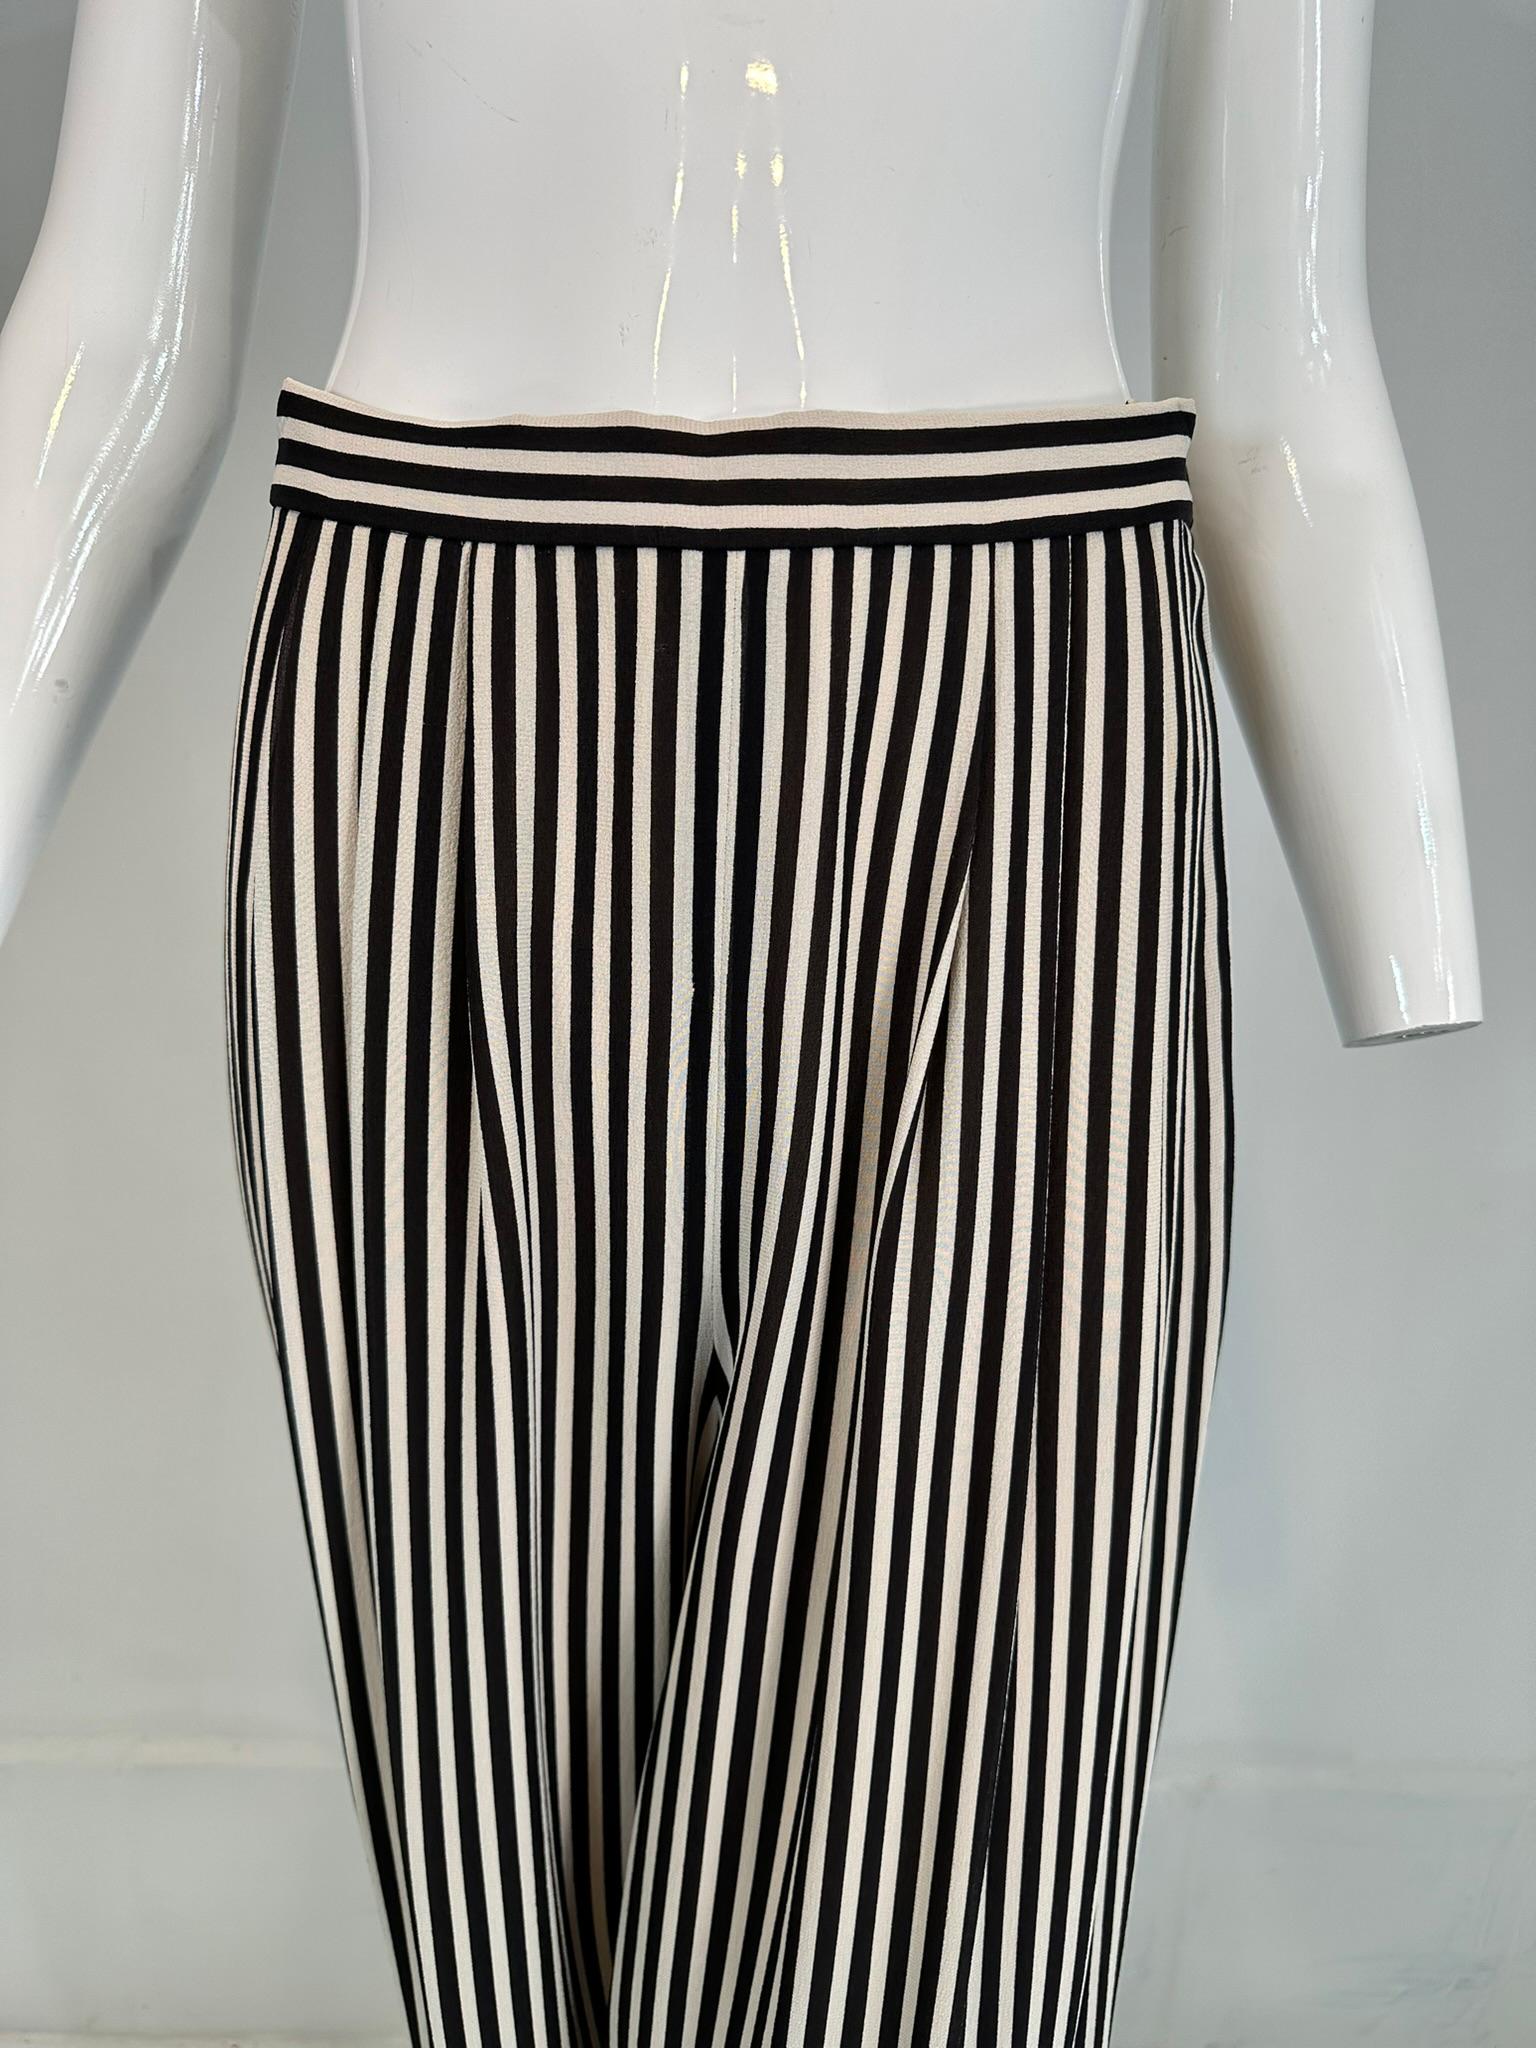 Pantalon large des années 1990 de la marque Carlislie, en soie noire et blanche à rayures et à plis sur le devant. Jambes larges et fluides, plis au niveau de la taille. Taille étroite, avec fermeture latérale à boutons et fermeture à glissière en